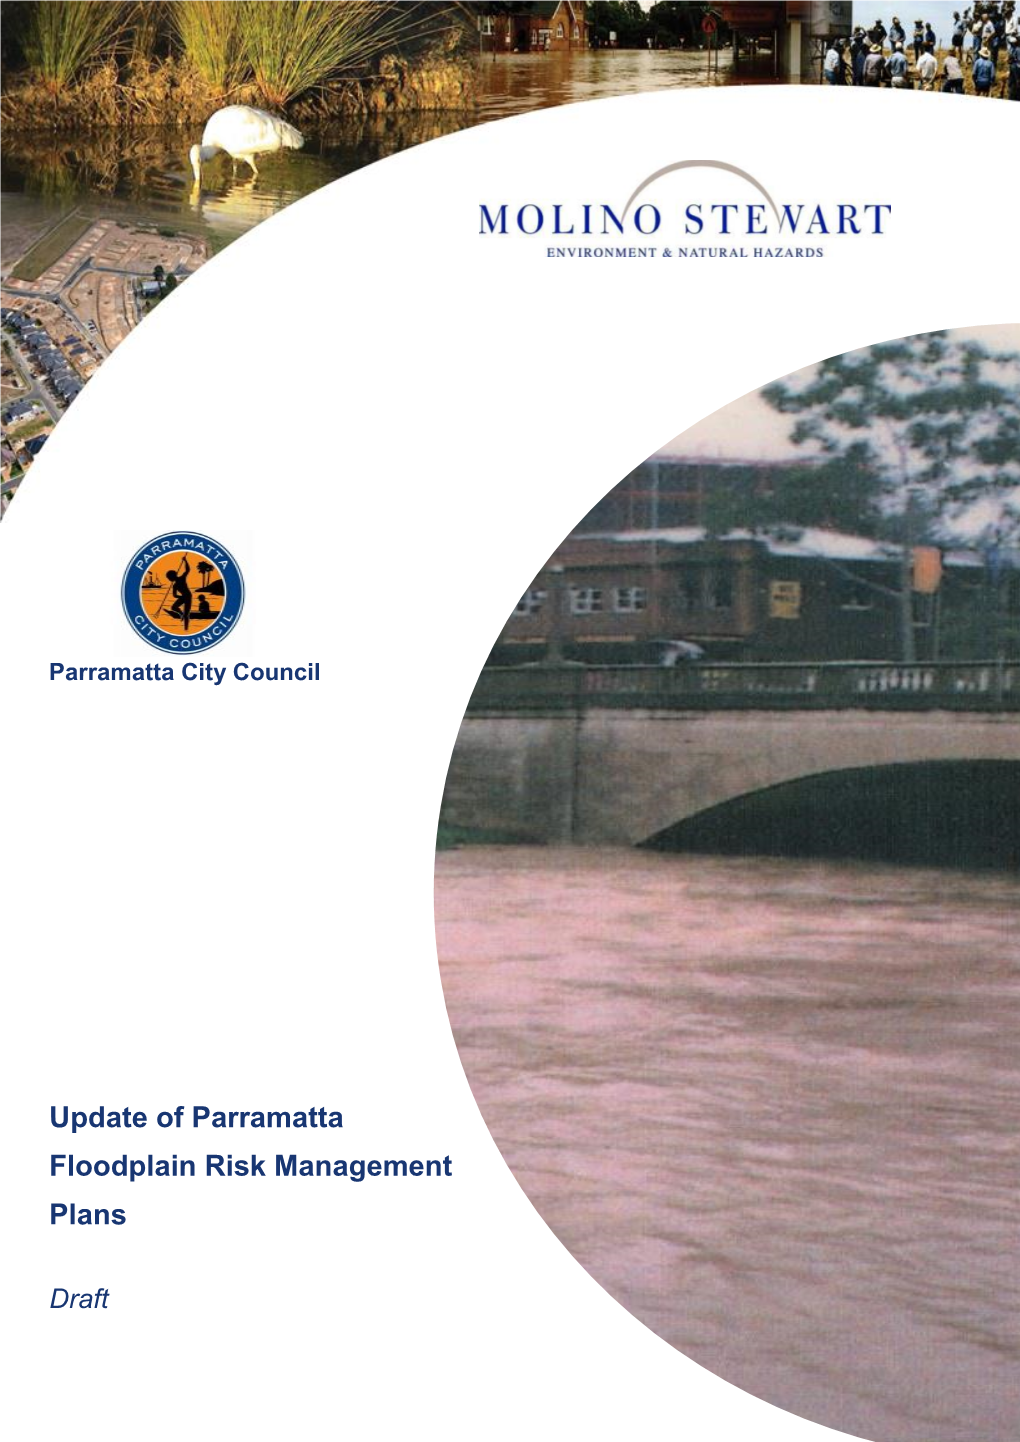 Update of Parramatta Floodplain Risk Management Plans